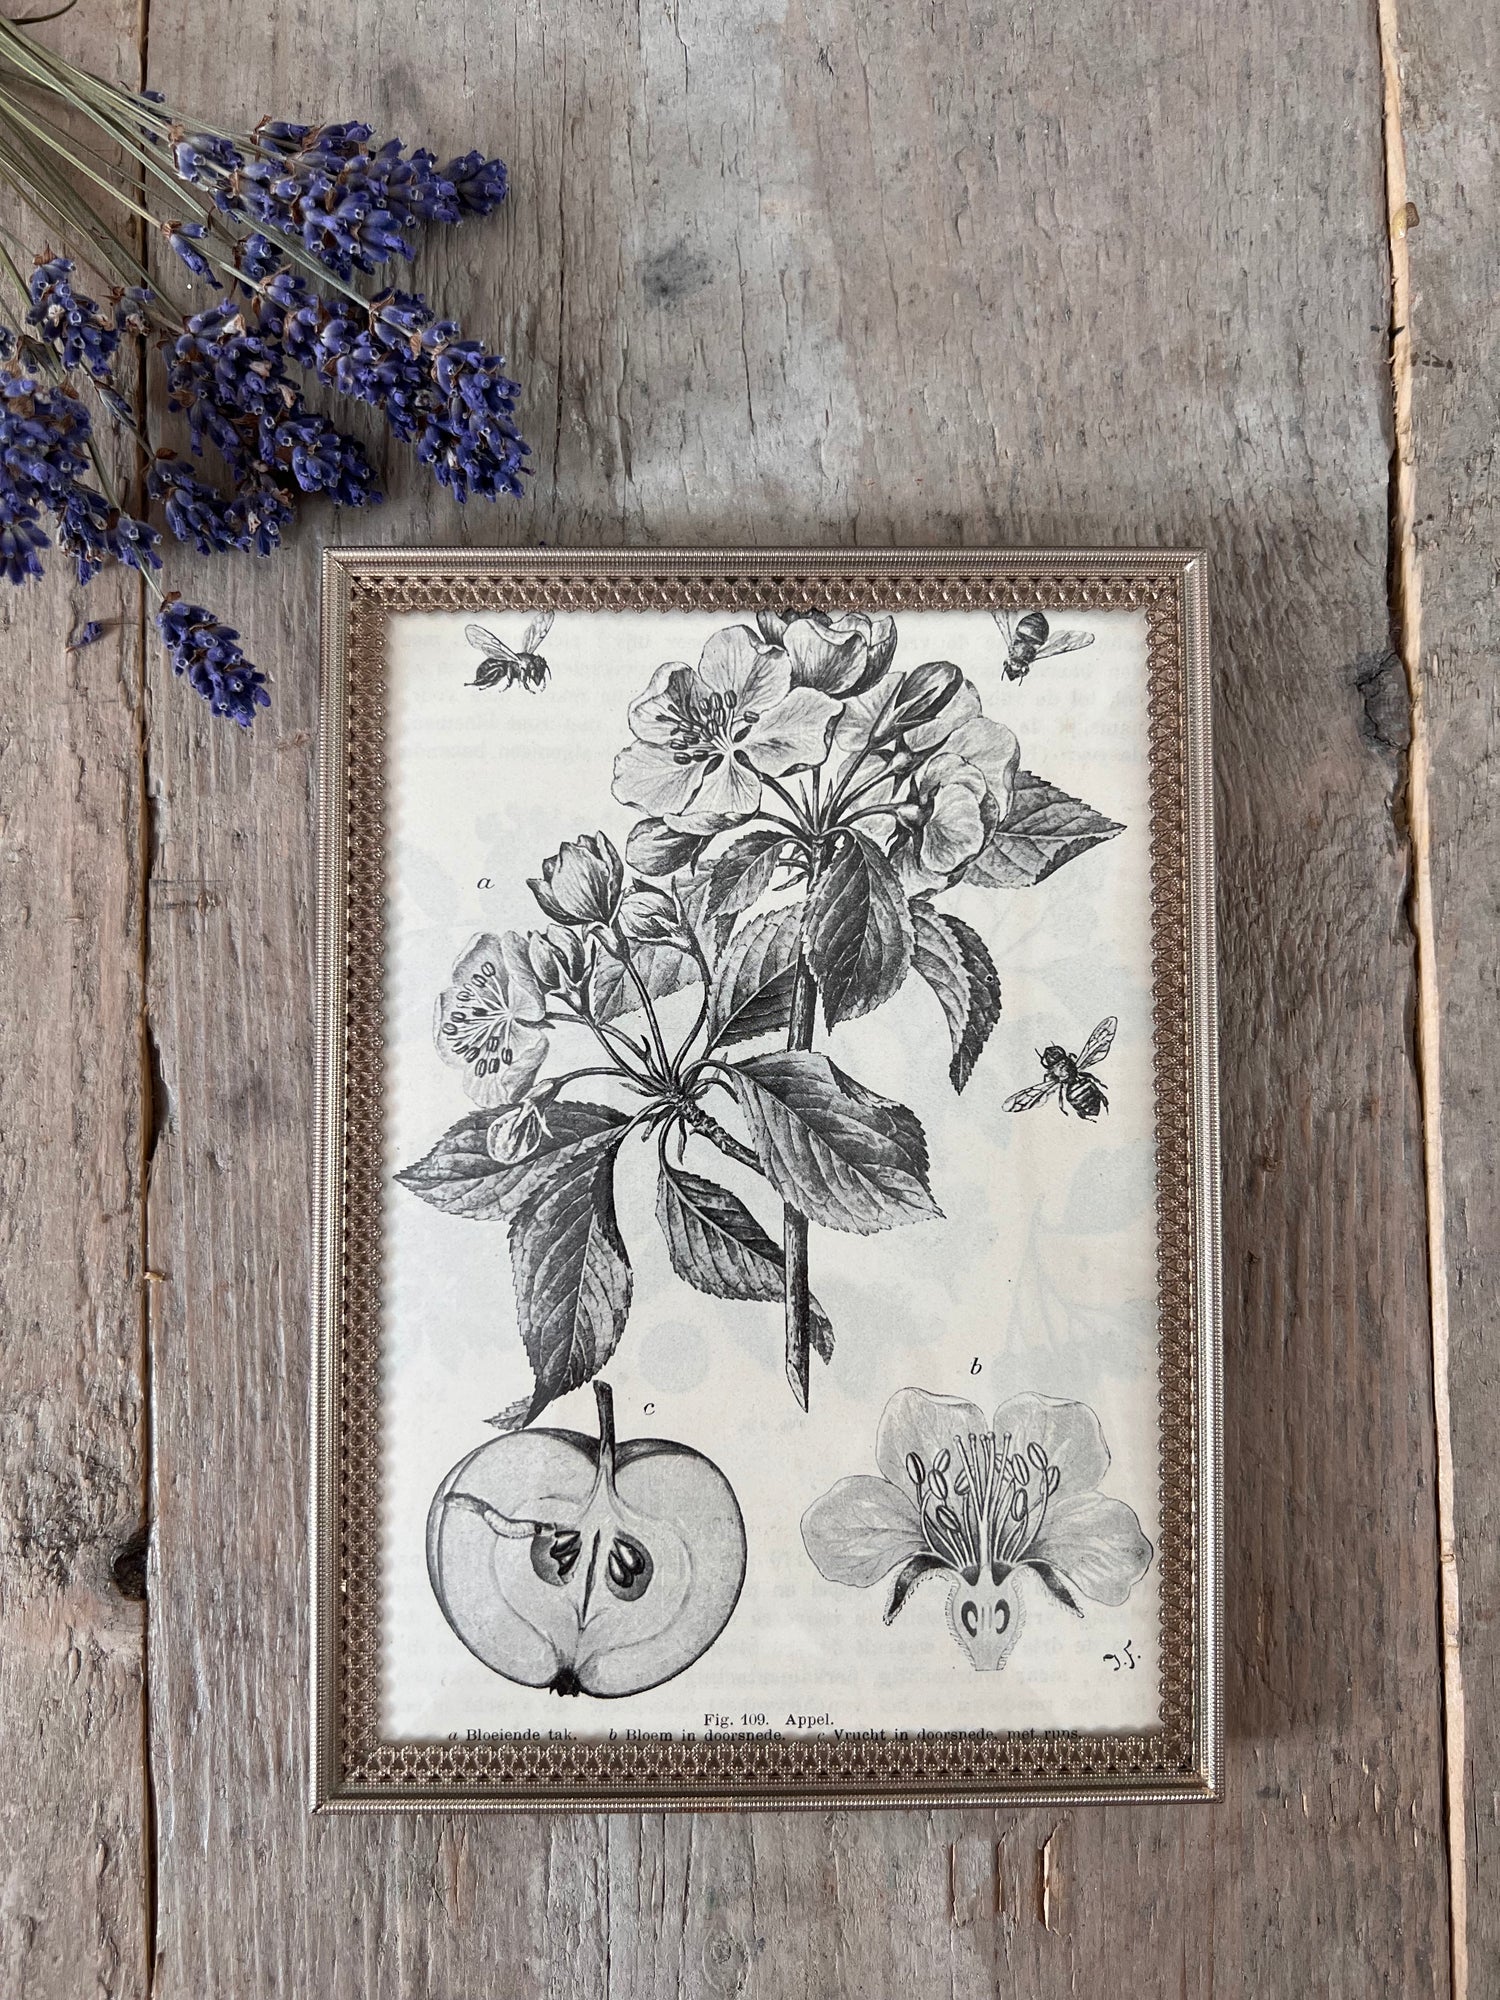 Vintage lijstje met botanische illustratie appel uit 1917